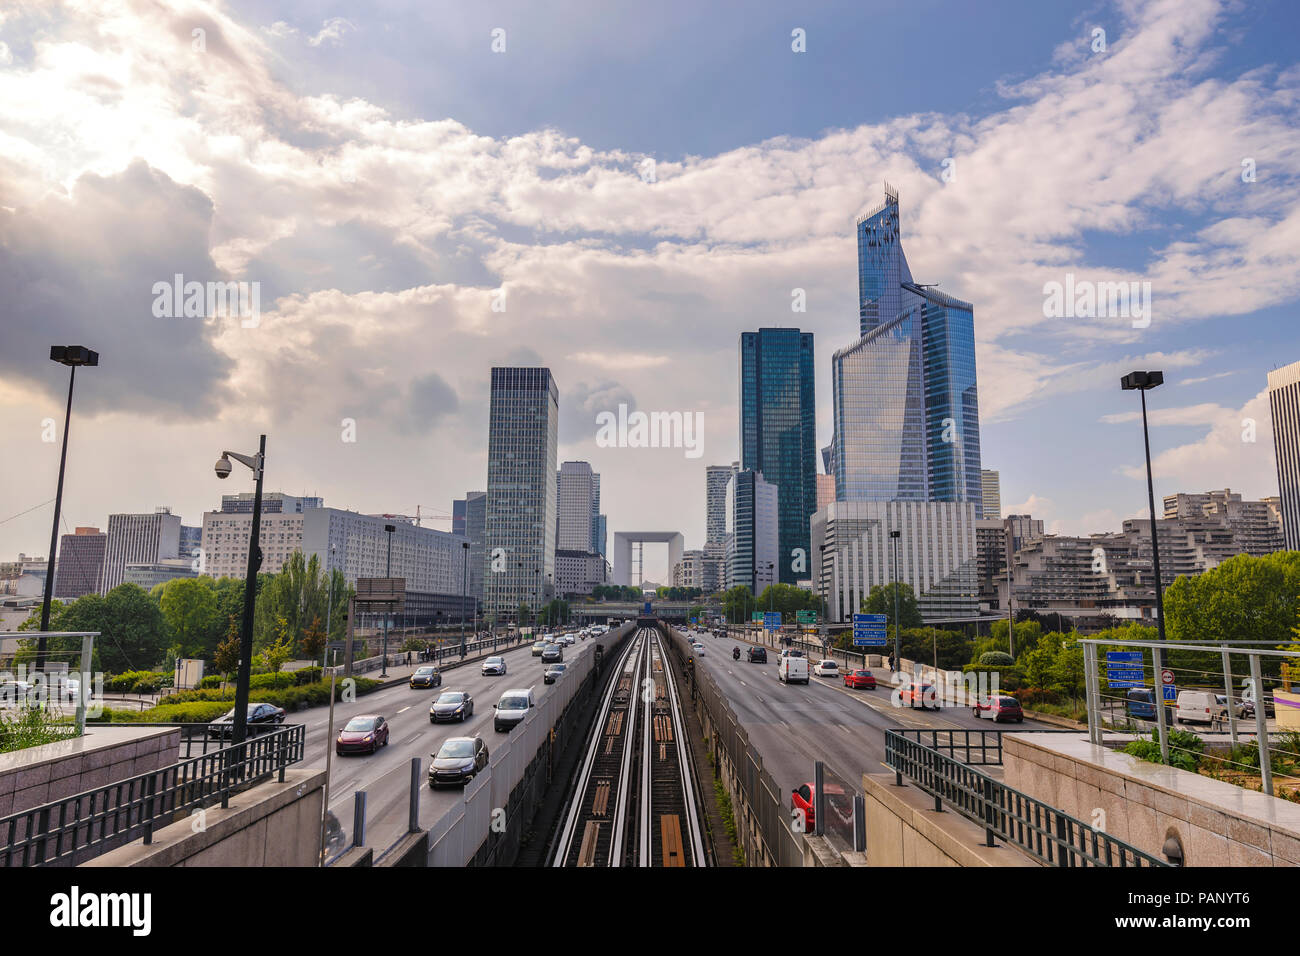 Paris city skyline at La Defrense business district, Paris France Stock Photo